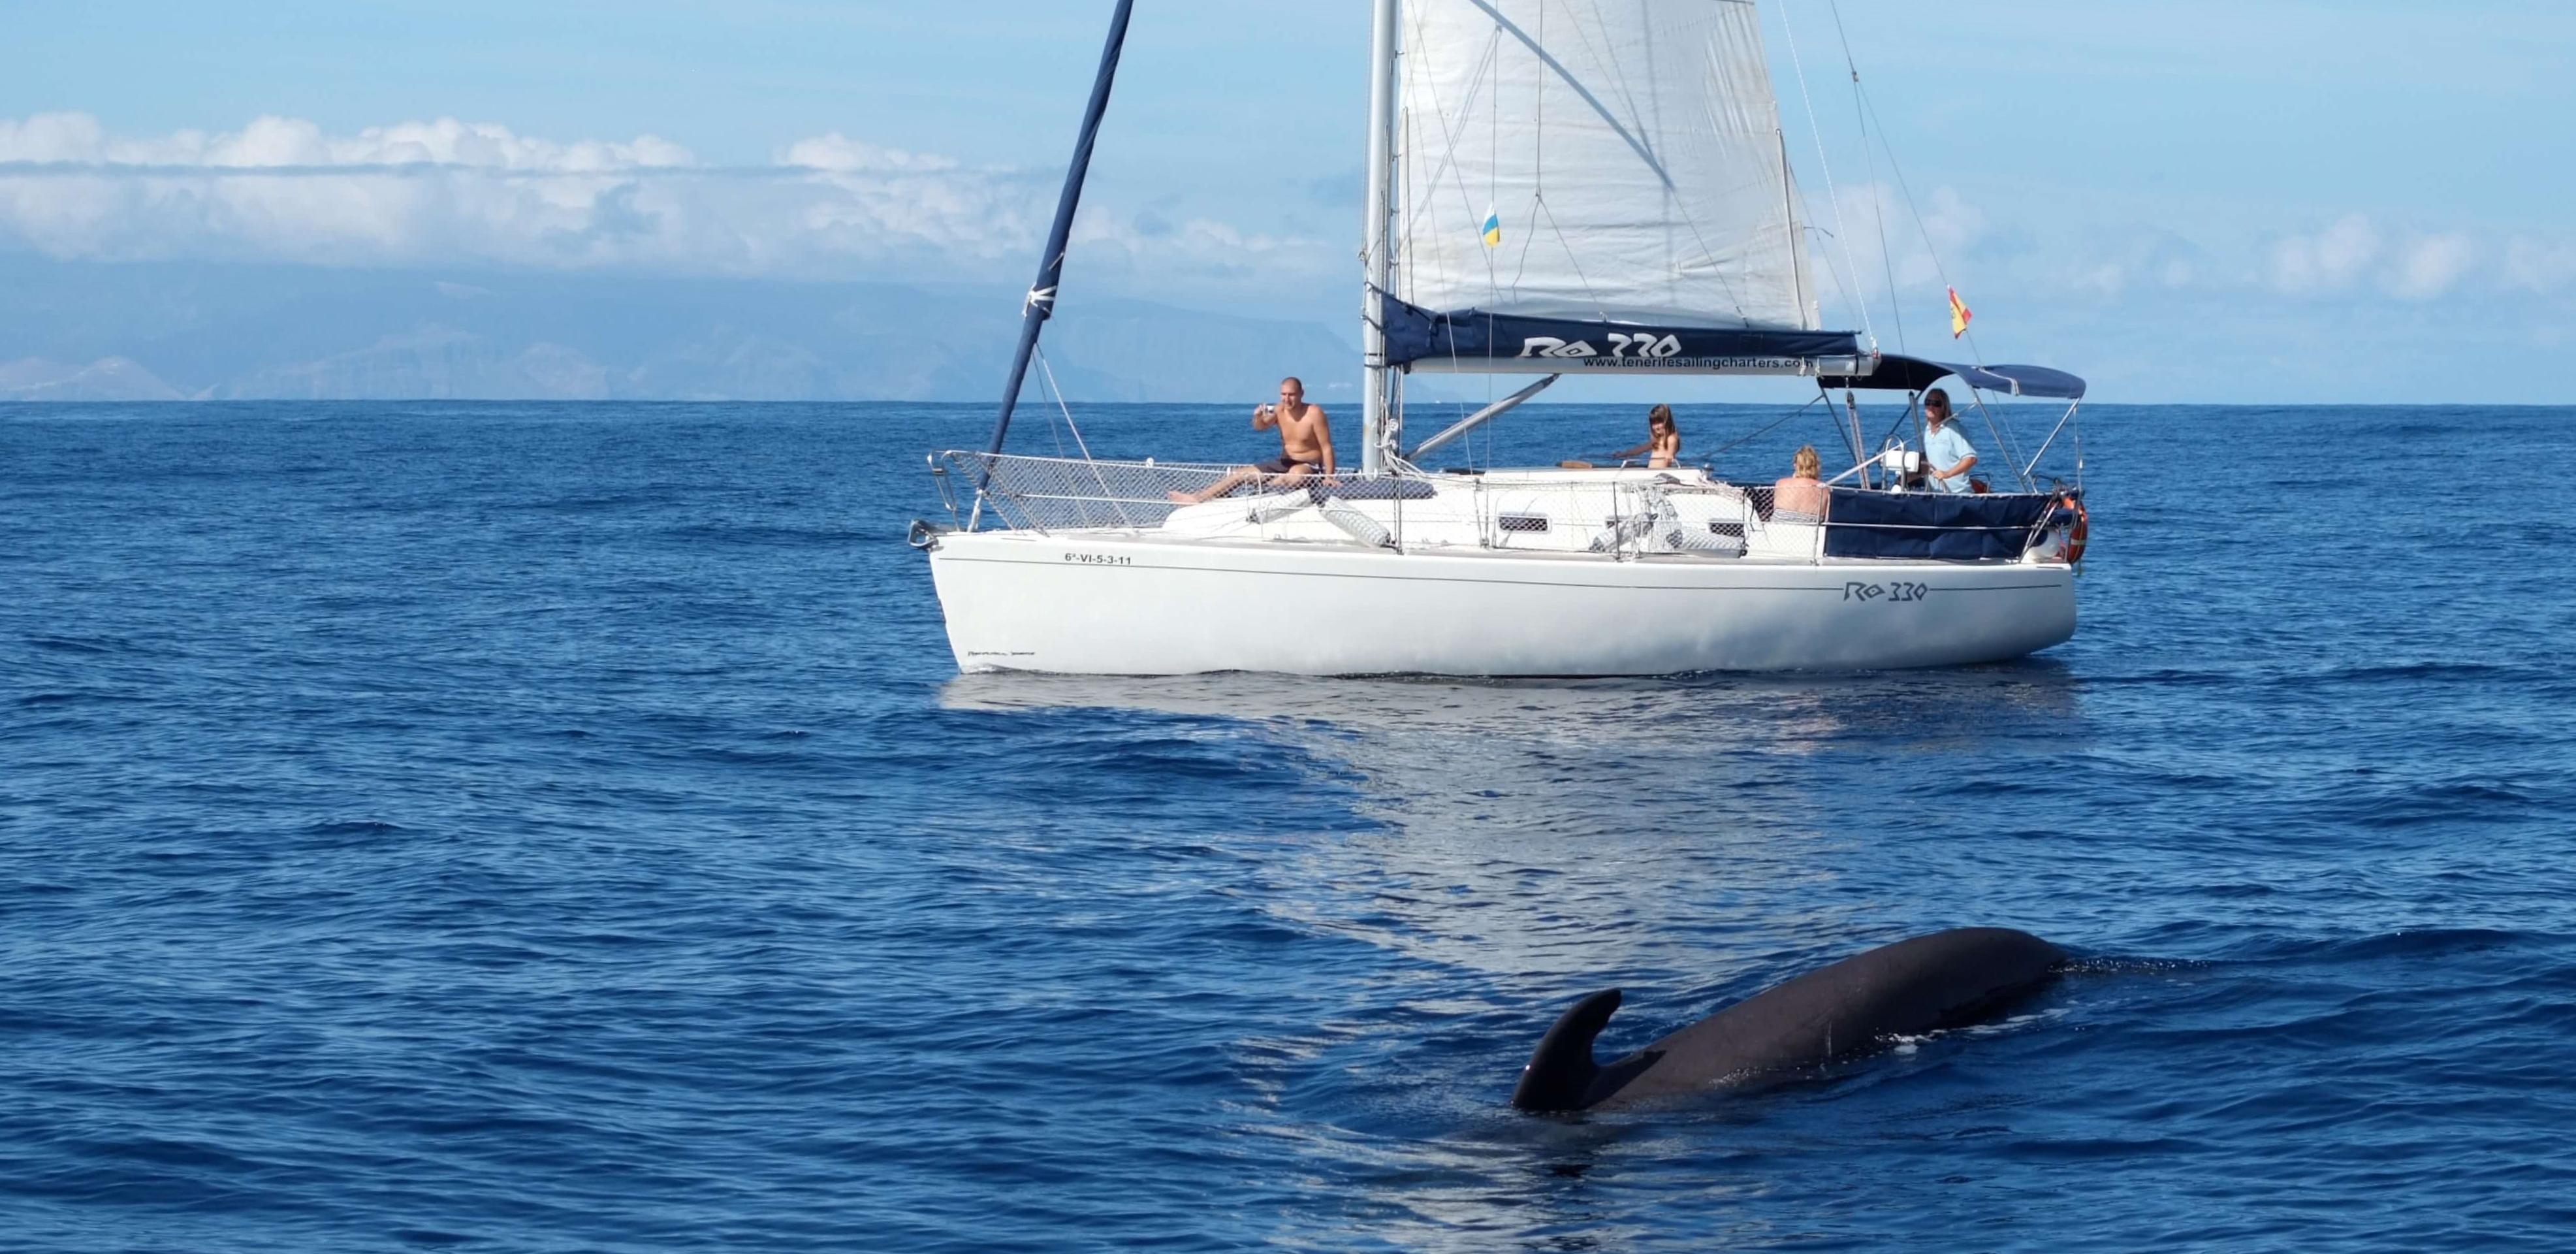 Croisière d'observation des dauphins et baleines en voilier à Tenerife - 3 heures - snacks et boissons inclus